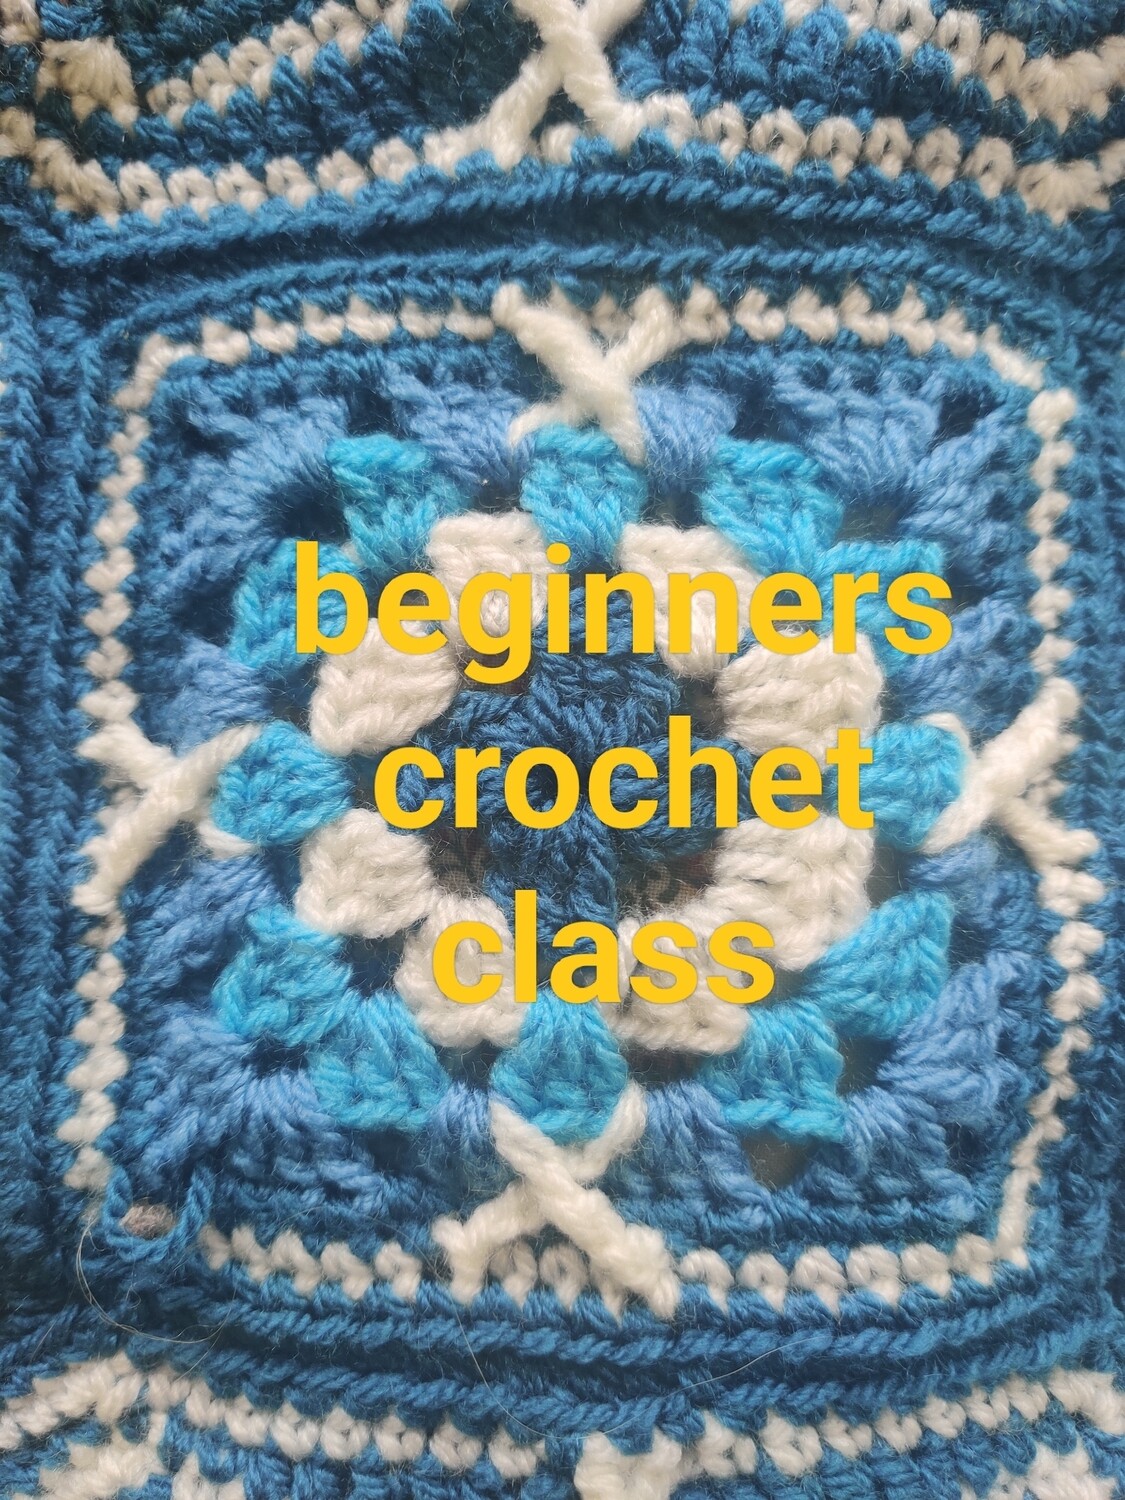 Adult beginners crochet class